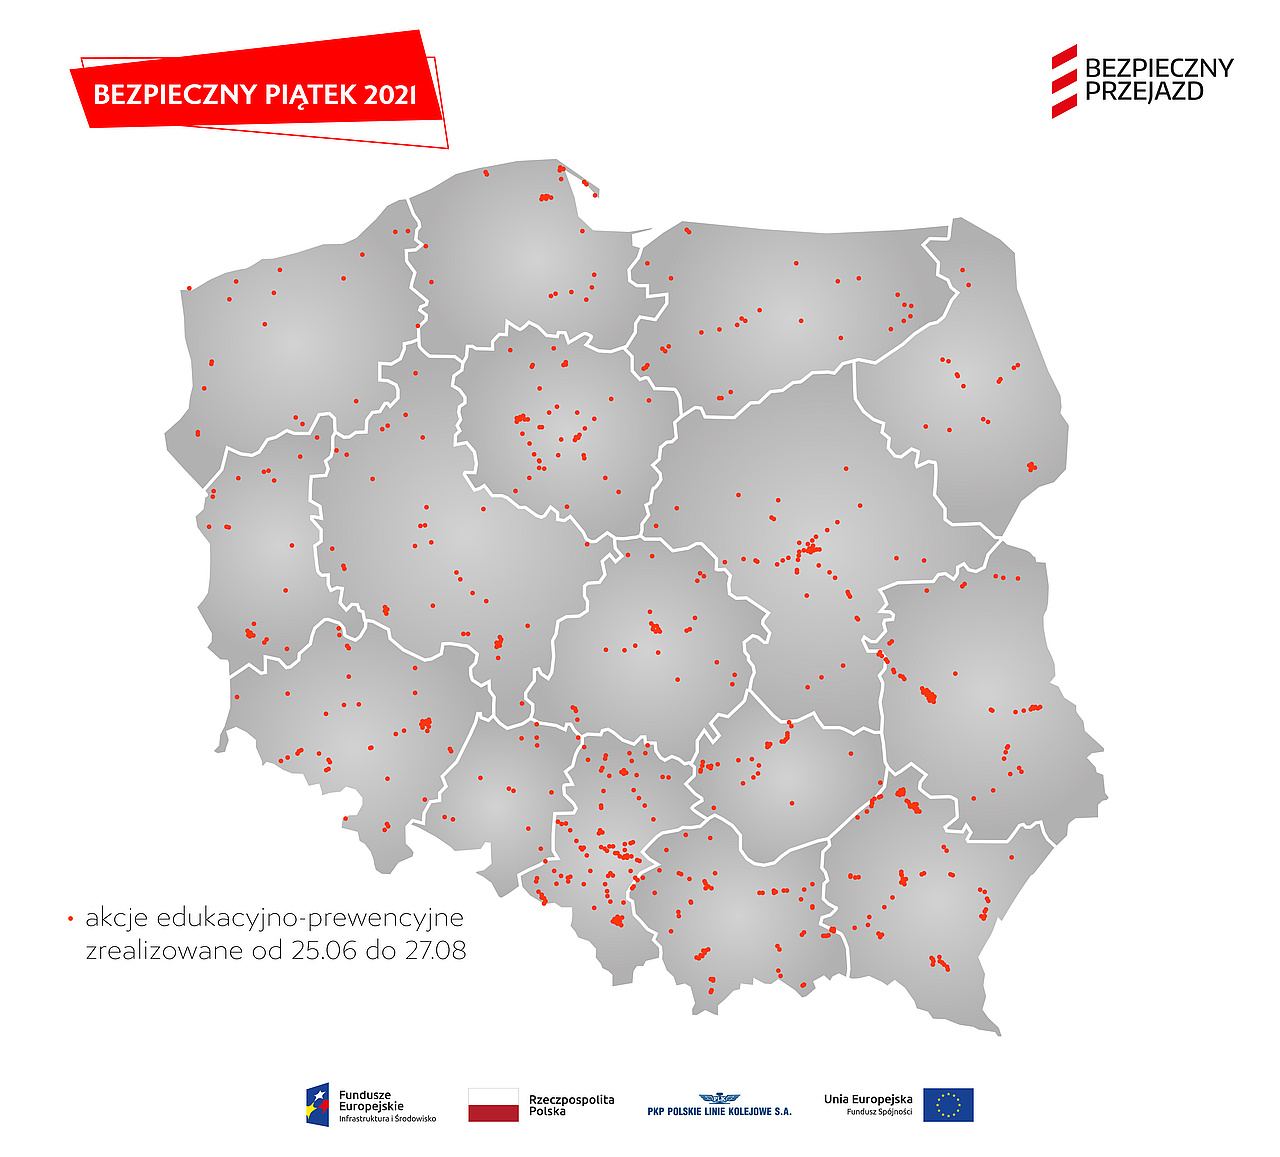 Mapa z lokalizacjami akcji bezpieczny piątek w 2021 r.